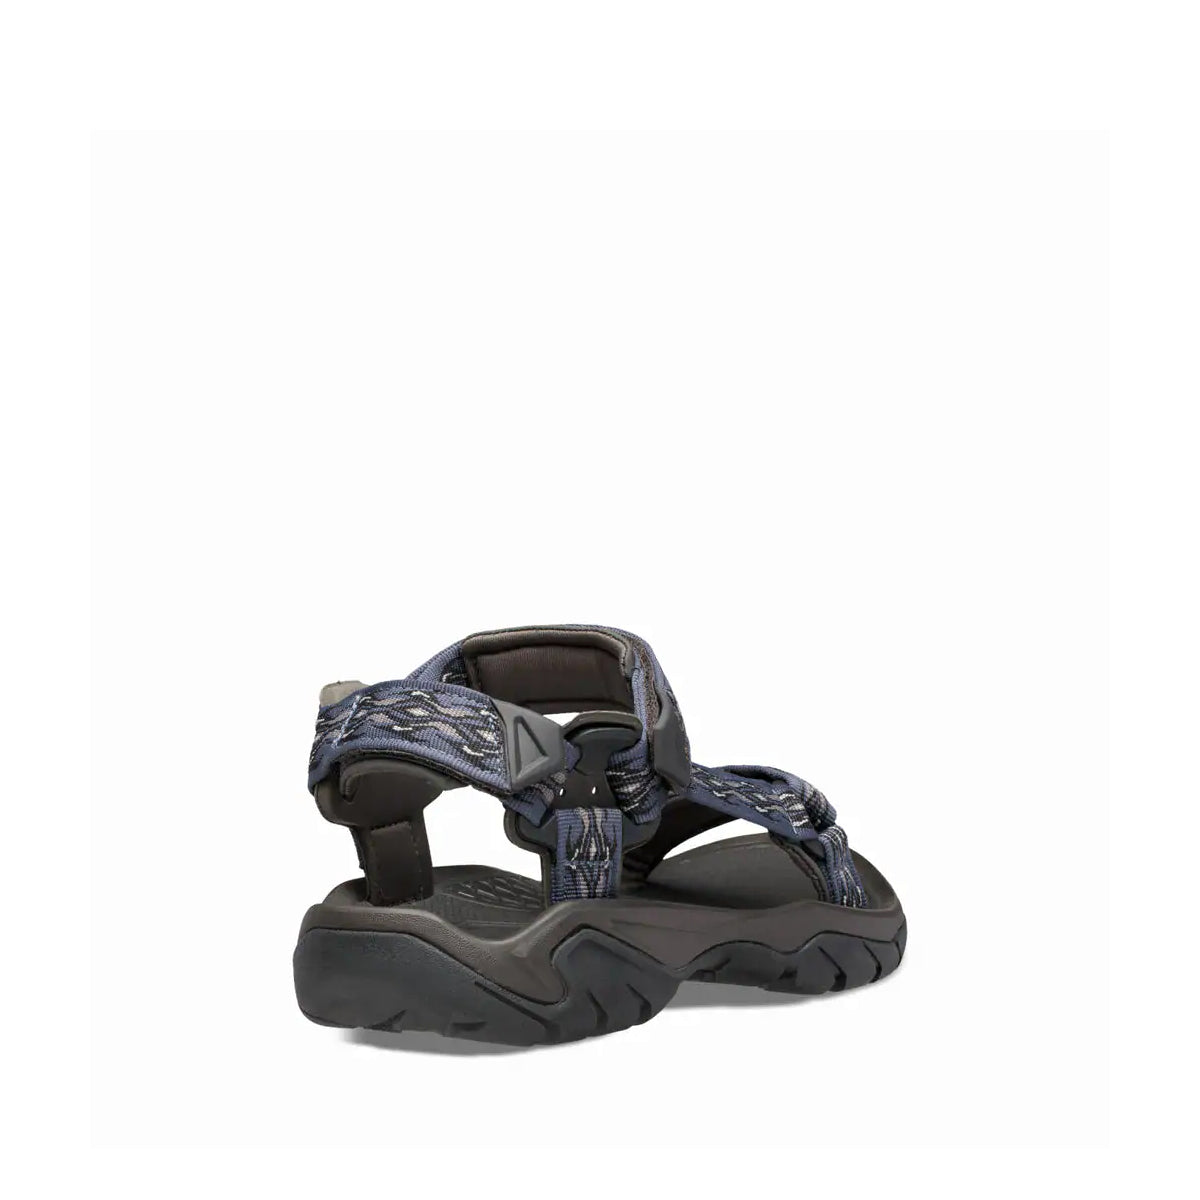 M Terra Fi 5 Universal - shoe&me - Teva - Sandal - Mens, Sandal